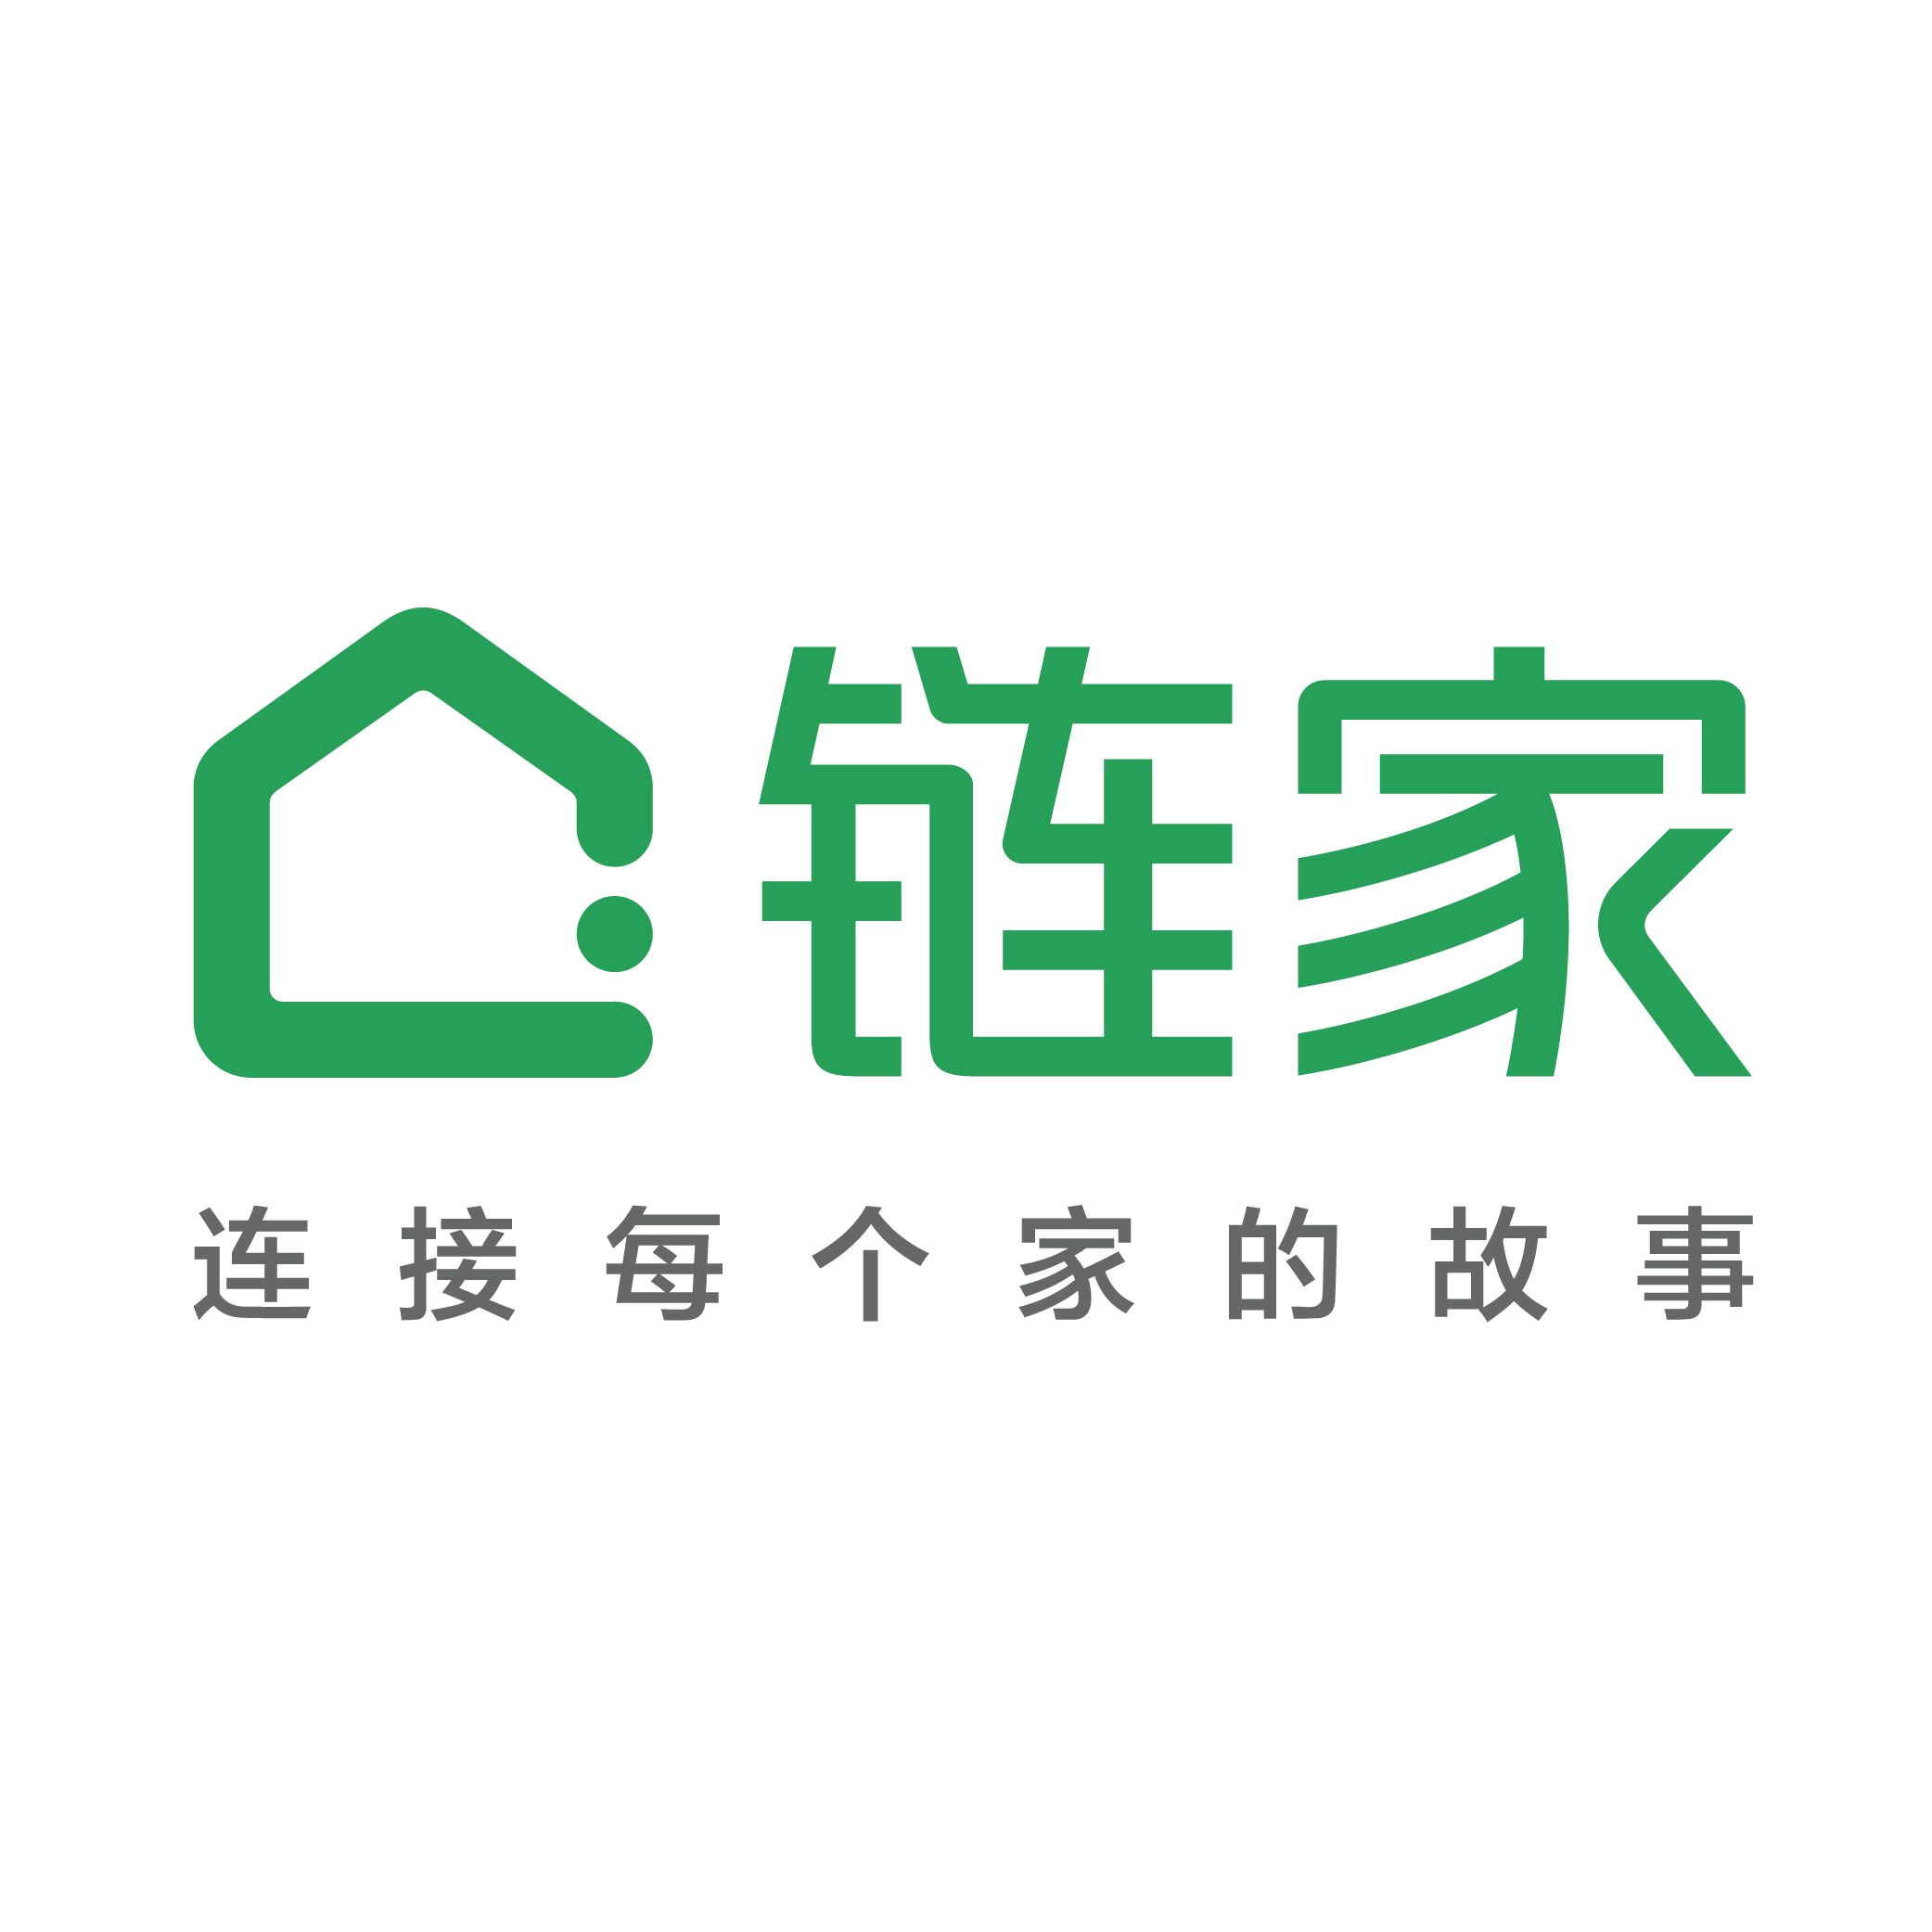 房地产开发与经营 10000人以上 惠州链家地产是一家房地产经纪公司